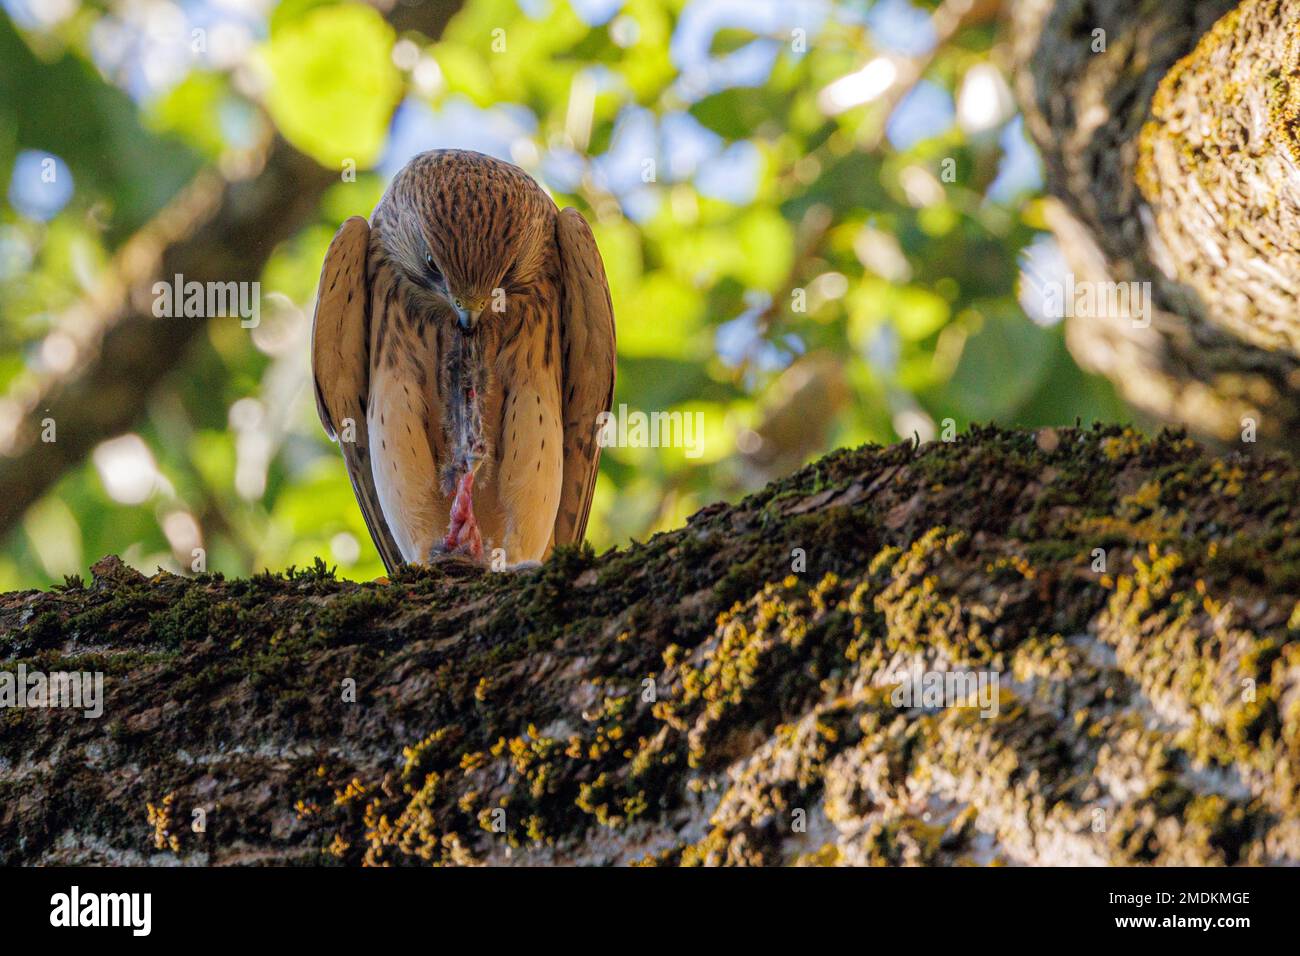 Europäisches Kestrel, Eurasisches Kestrel, Alte Welt Kestrel, Gemeiner Kestrel (Falco tinnunculus), sitzt auf einem Baum und füttert eine Maus, Deutschland, Bayern Stockfoto